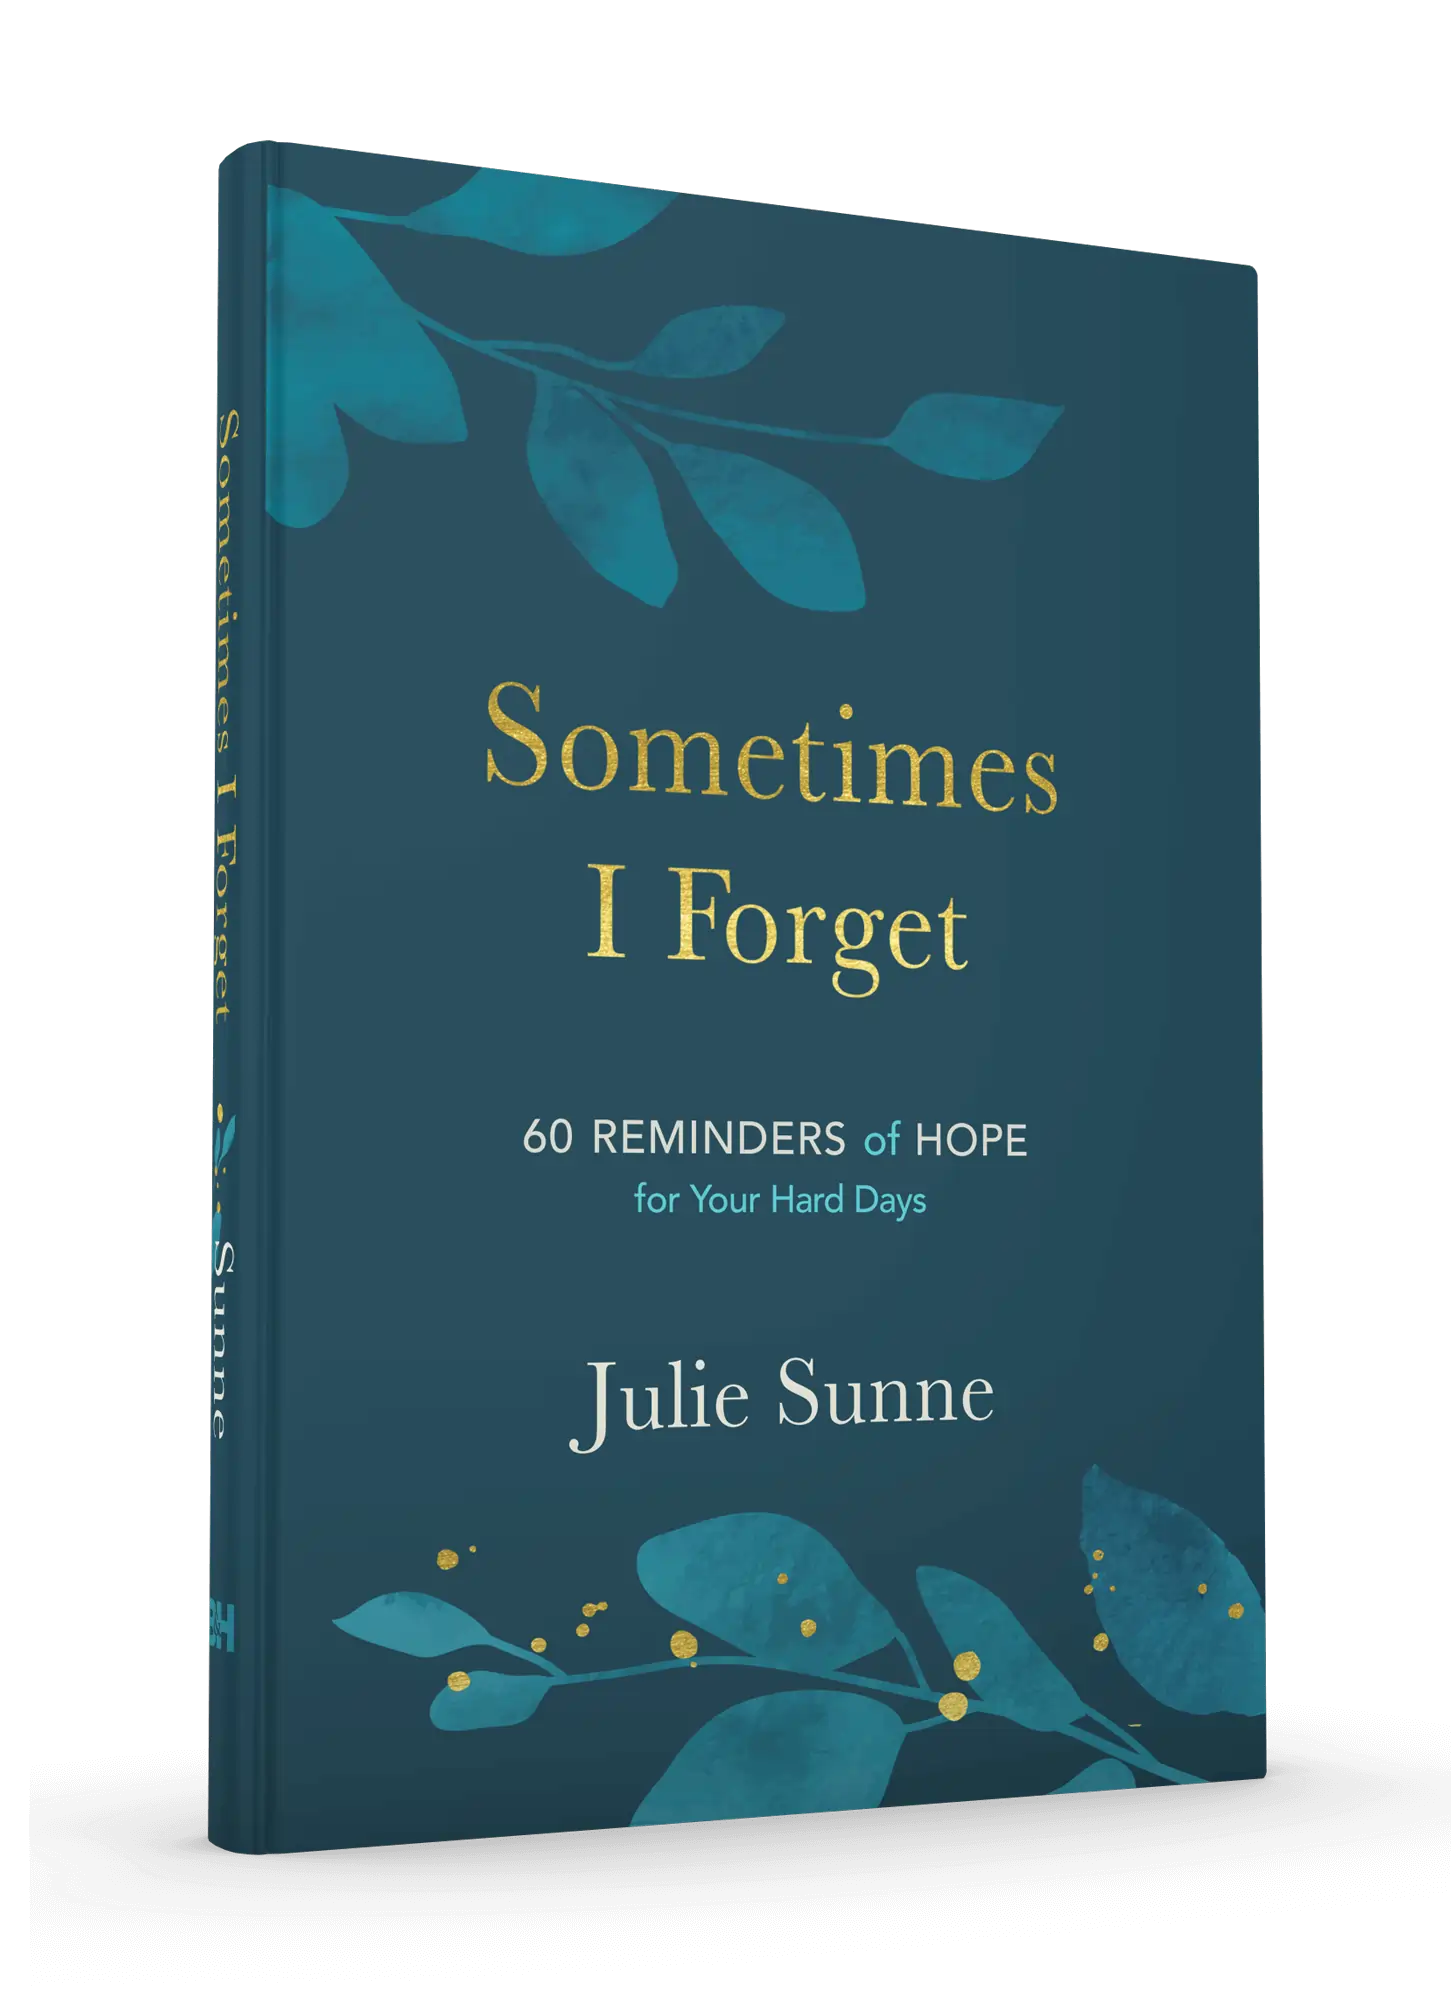 Sometimes I Forget by Julie Sunne